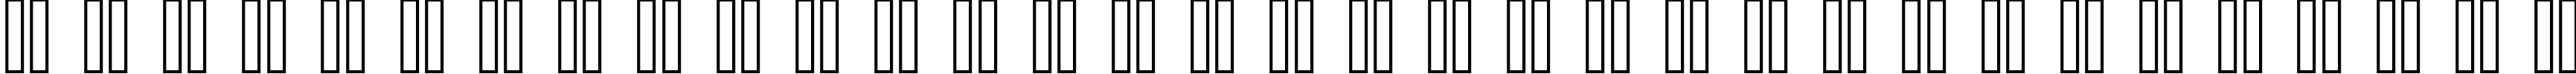 Пример написания русского алфавита шрифтом Flores